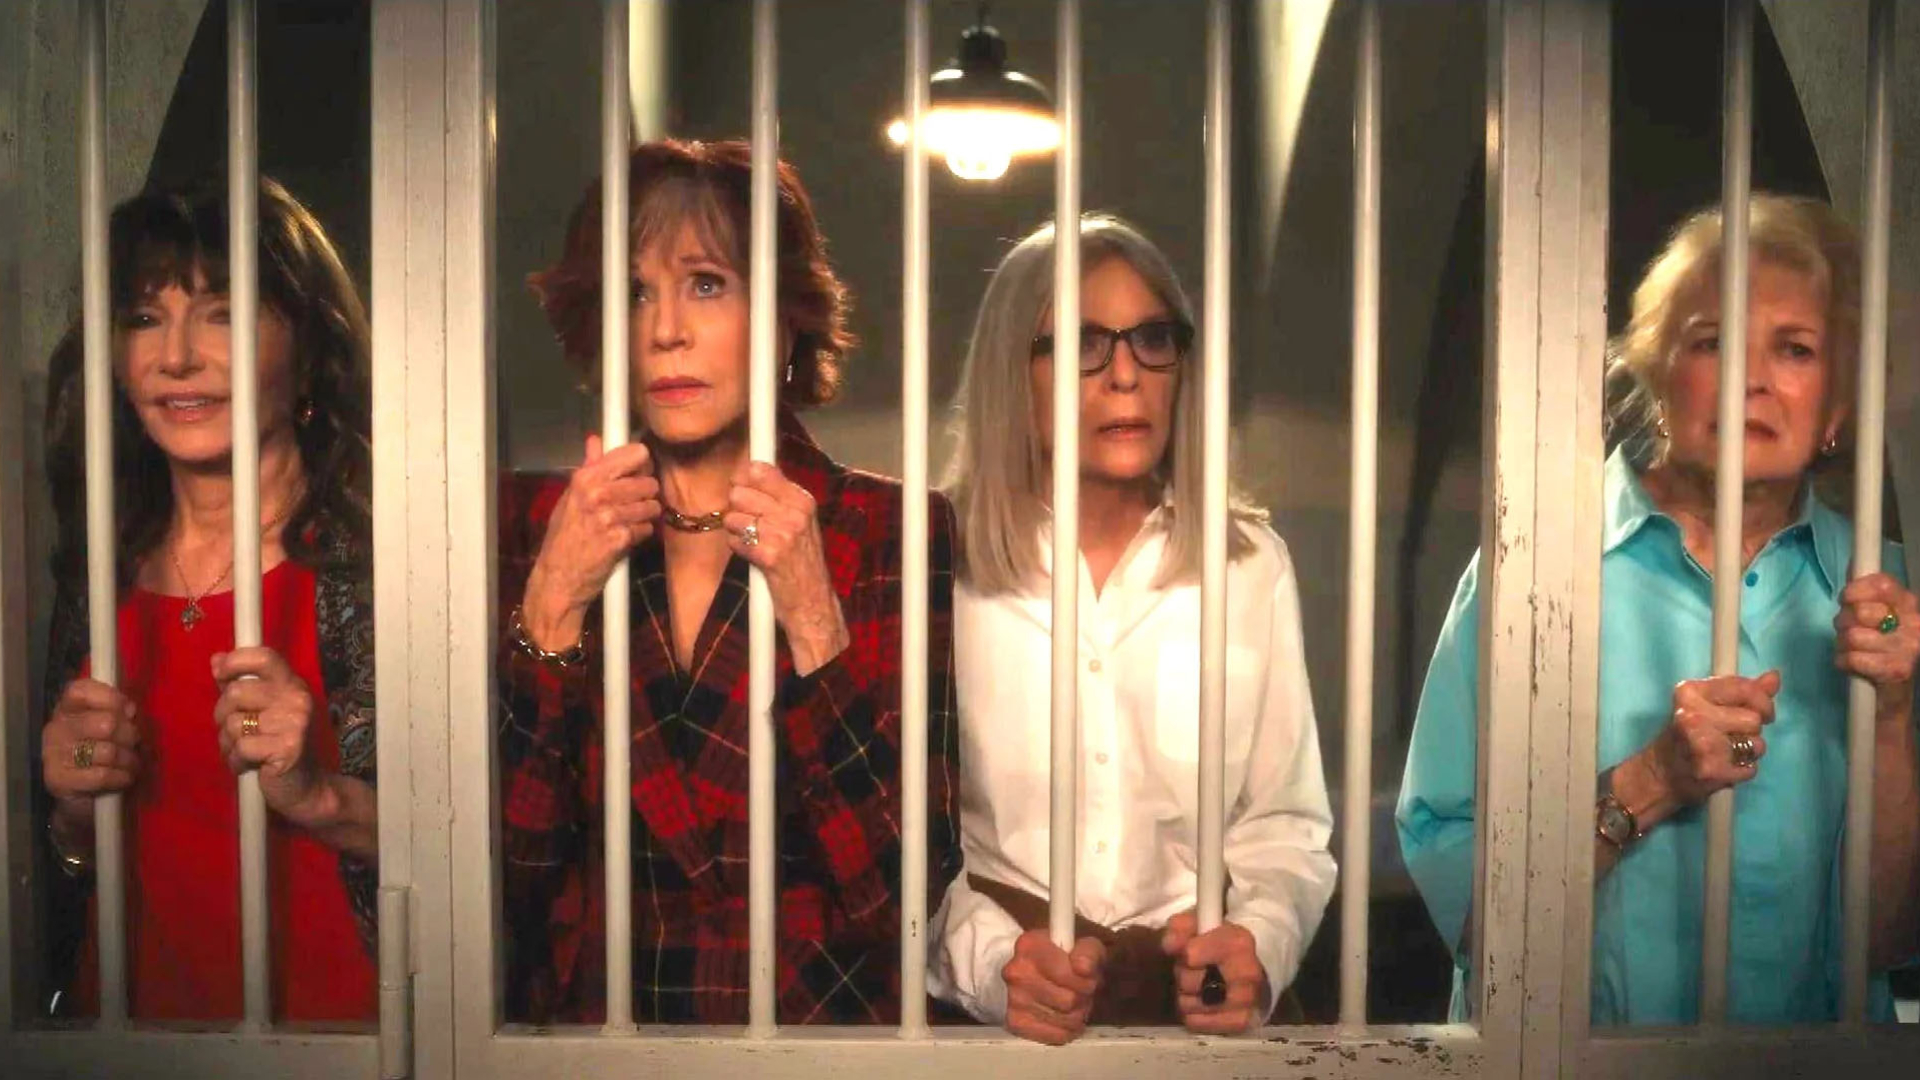 Escena de la cárcel Cuando ellas quieren más Jane Fonda